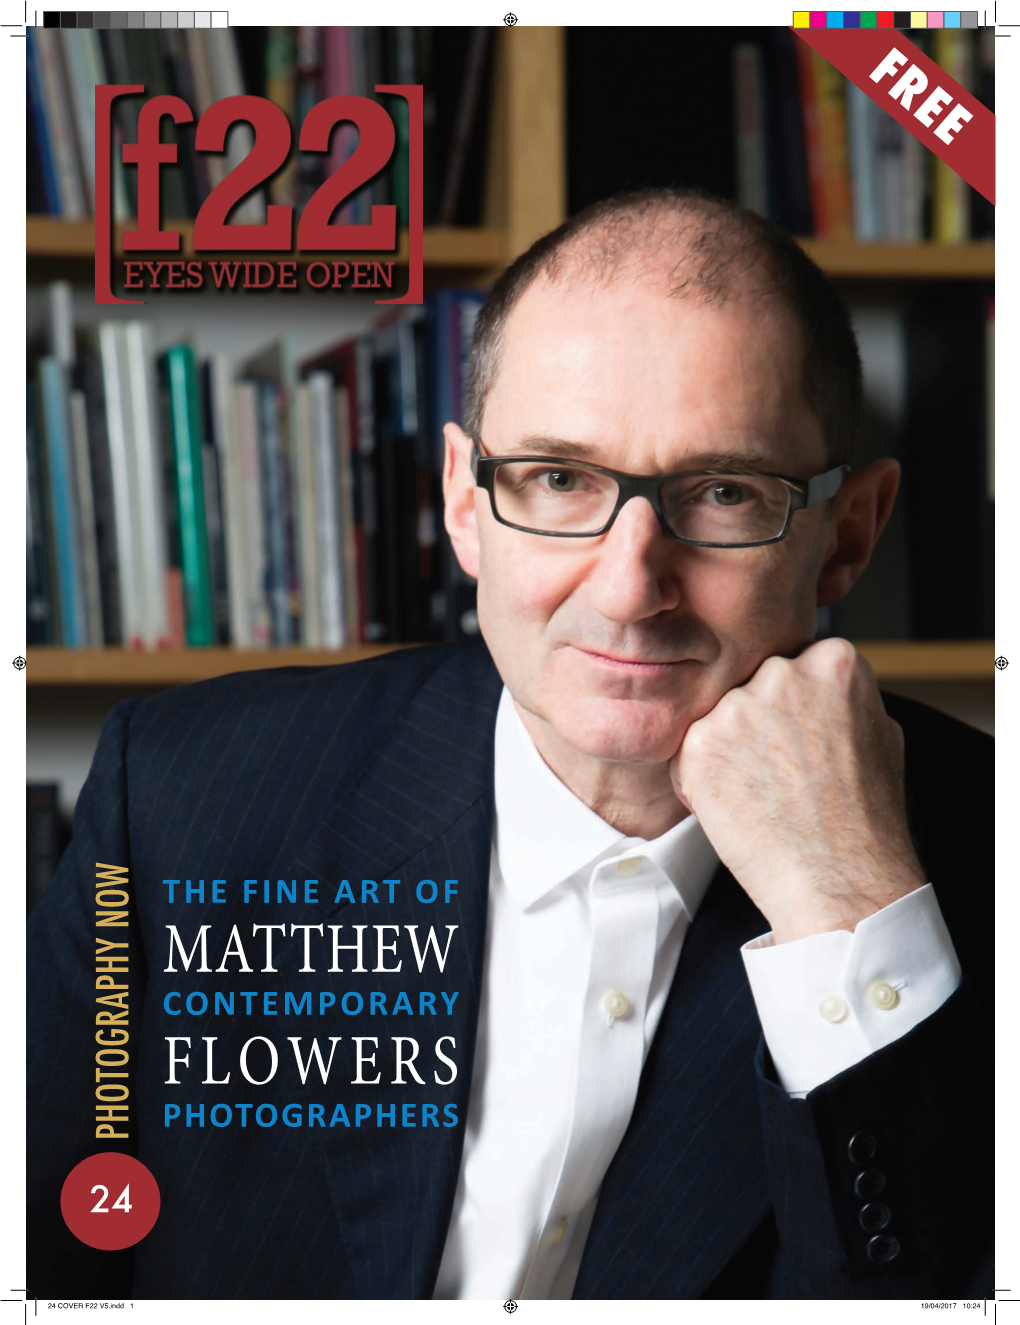 Matthew Flowers 2017